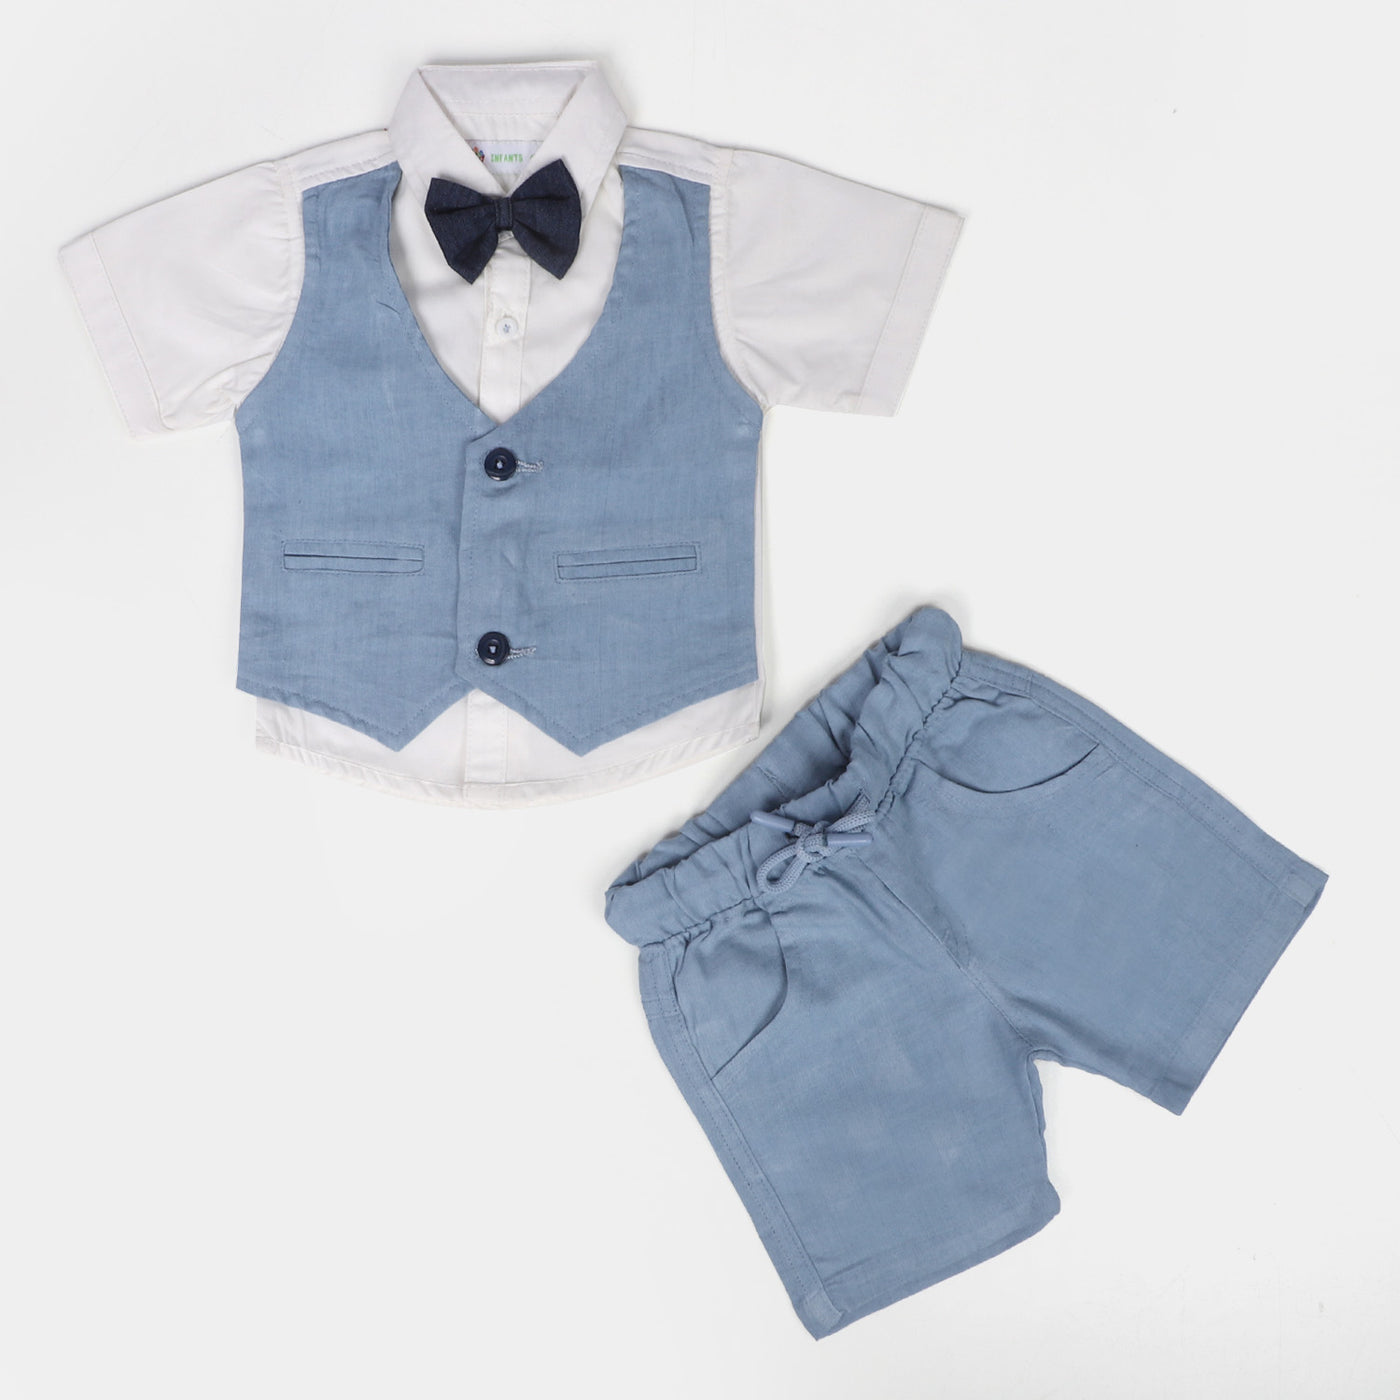 Infant Boys Cotton Suit - LIGHT BLUE